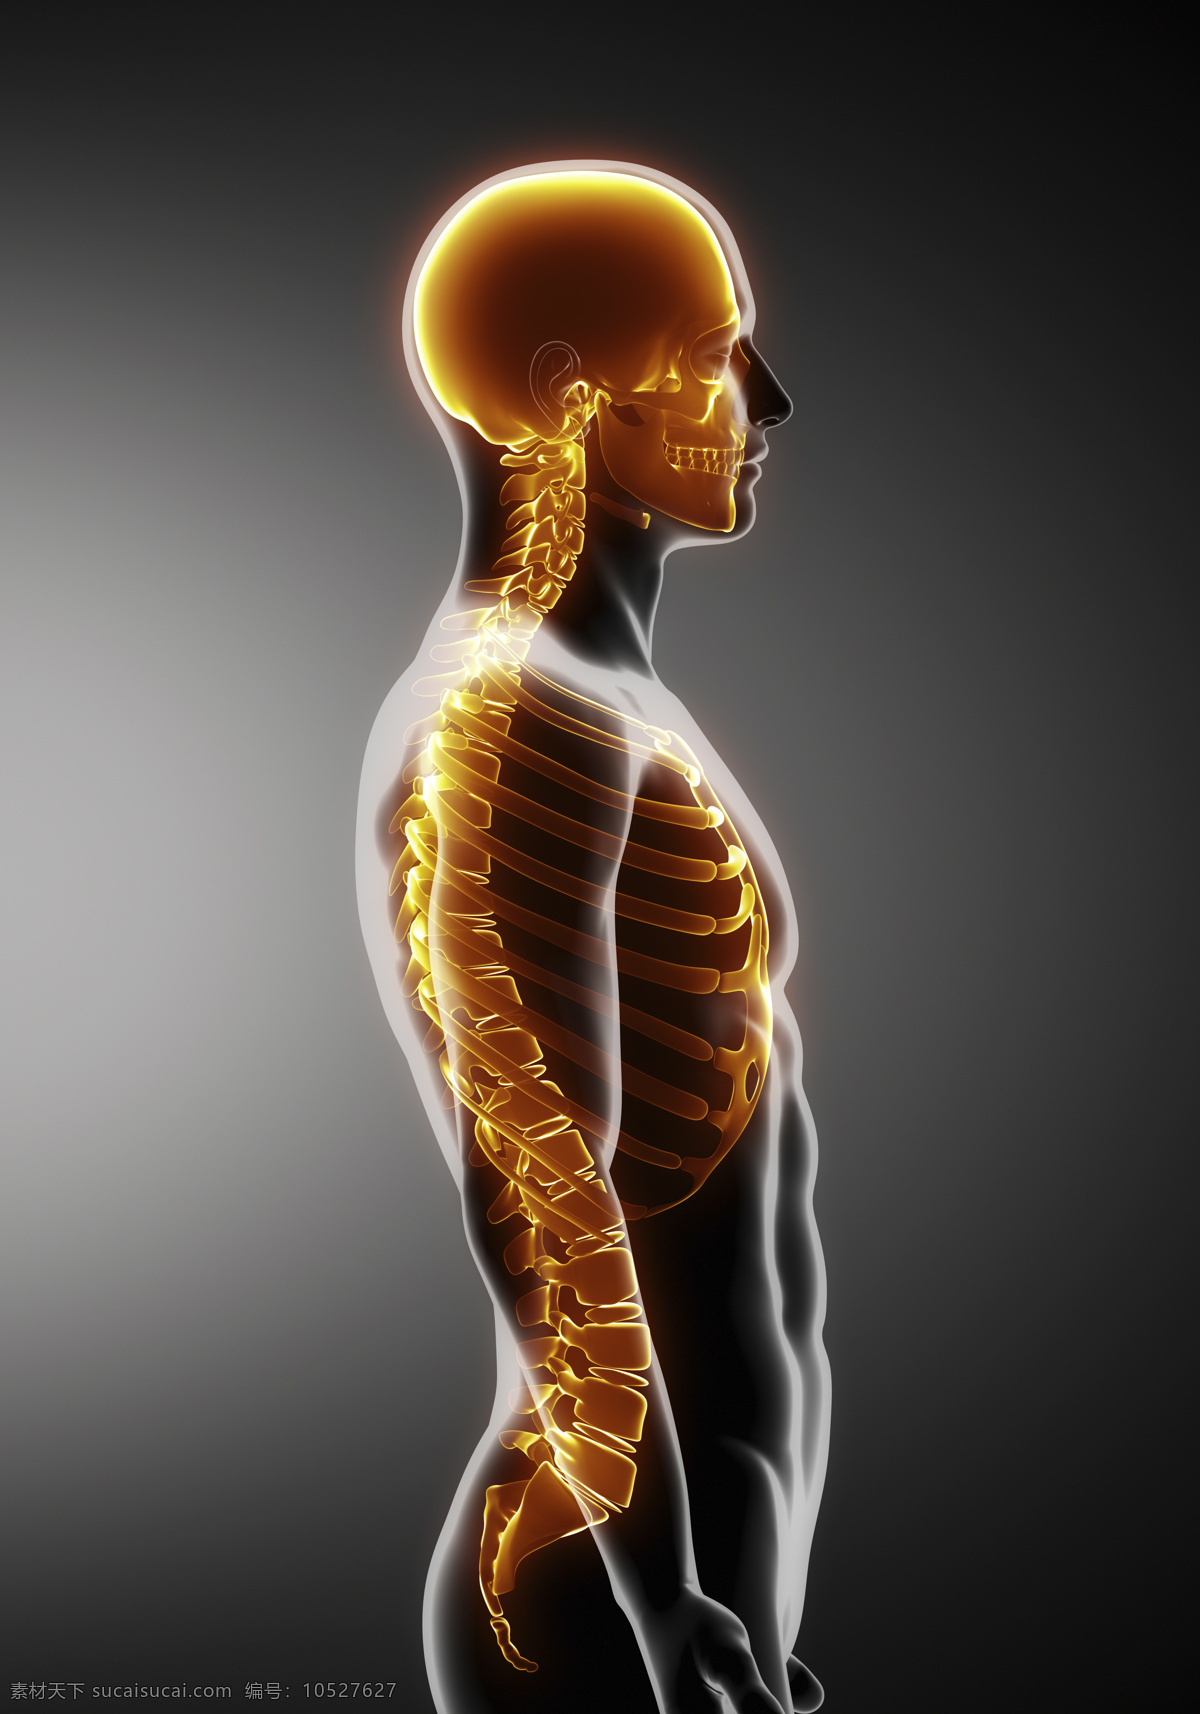 人体 骨架 骨骼 侧面 男性人体侧面 脊椎 脊髓 男性人体器官 医疗科学 医学 人体器官图 人物图片